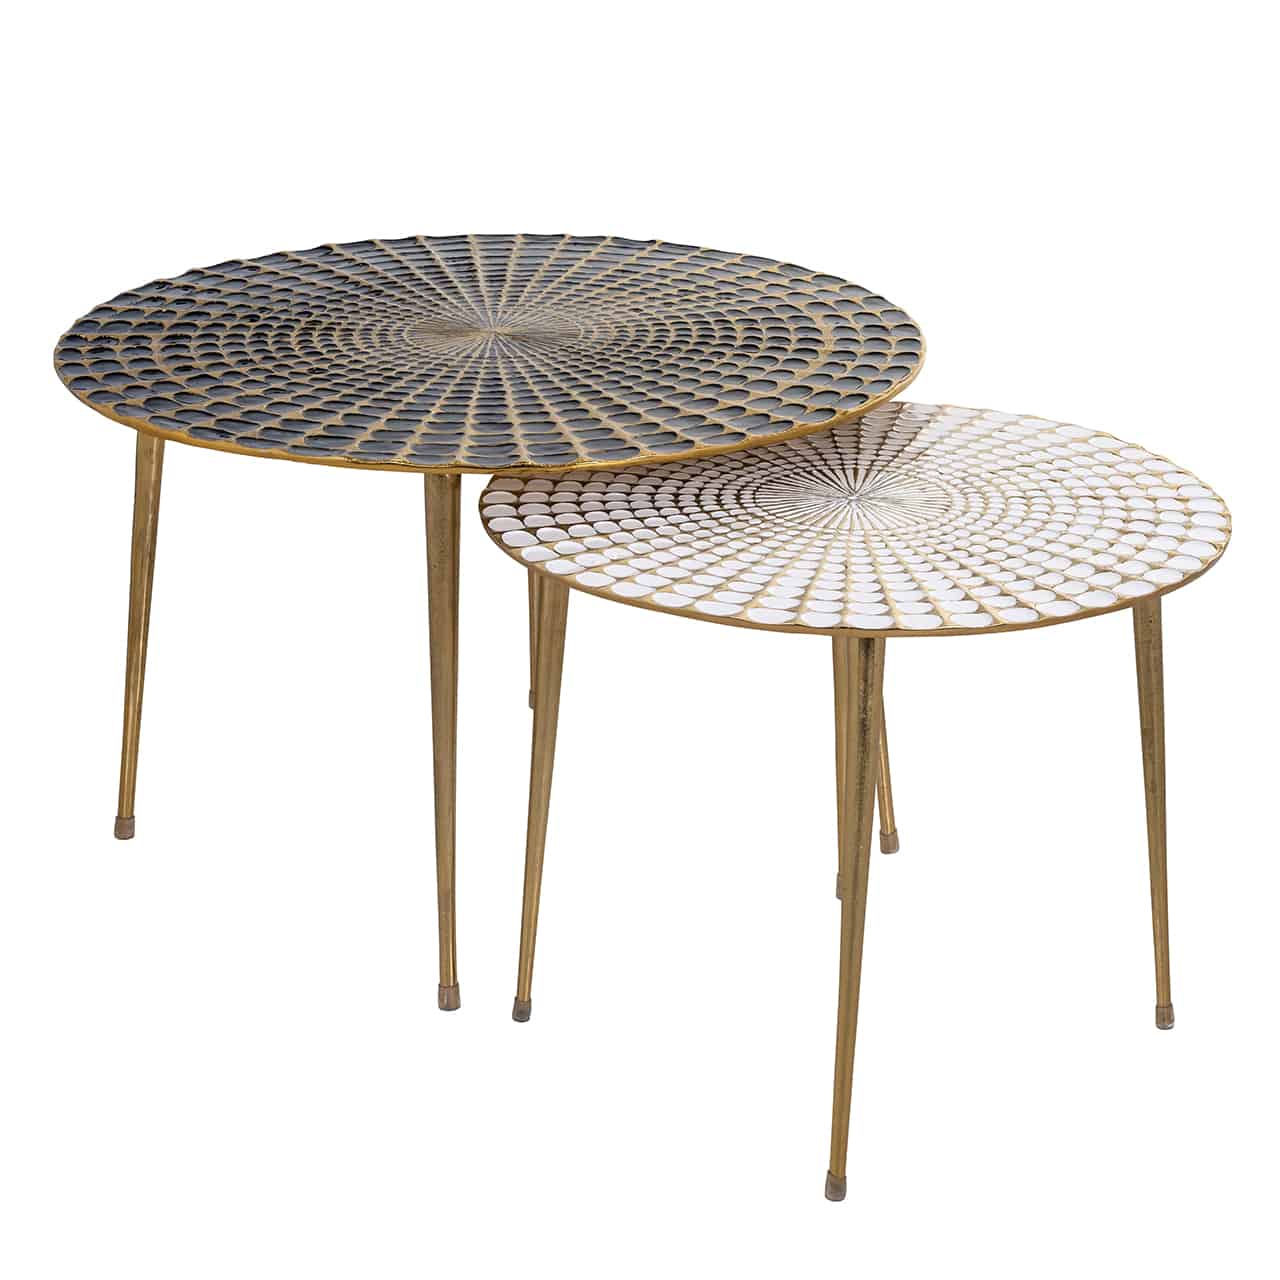 Zwei runde, verschieden große goldfarbene Tische, leicht ineinandergeschoben; jeweils vier Beine sich nach unten verjüngend;  Tischplatte des großen Tisches  schwarz, einem sternförmigen Mosaik ähnelnd, das gleiche Muster in weiß beim kleineren Tisch.